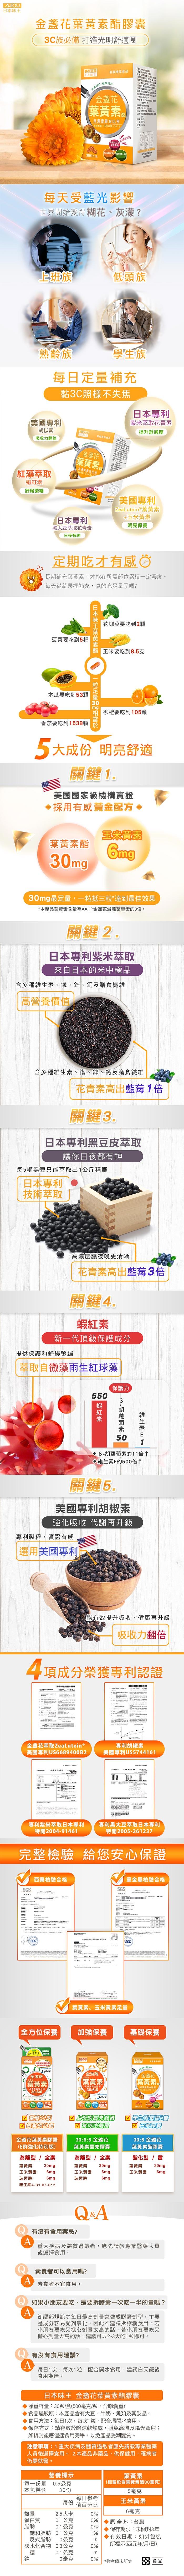 日本味王-金盞花葉黃素膠囊(30粒X3盒)優惠組﻿產品資訊